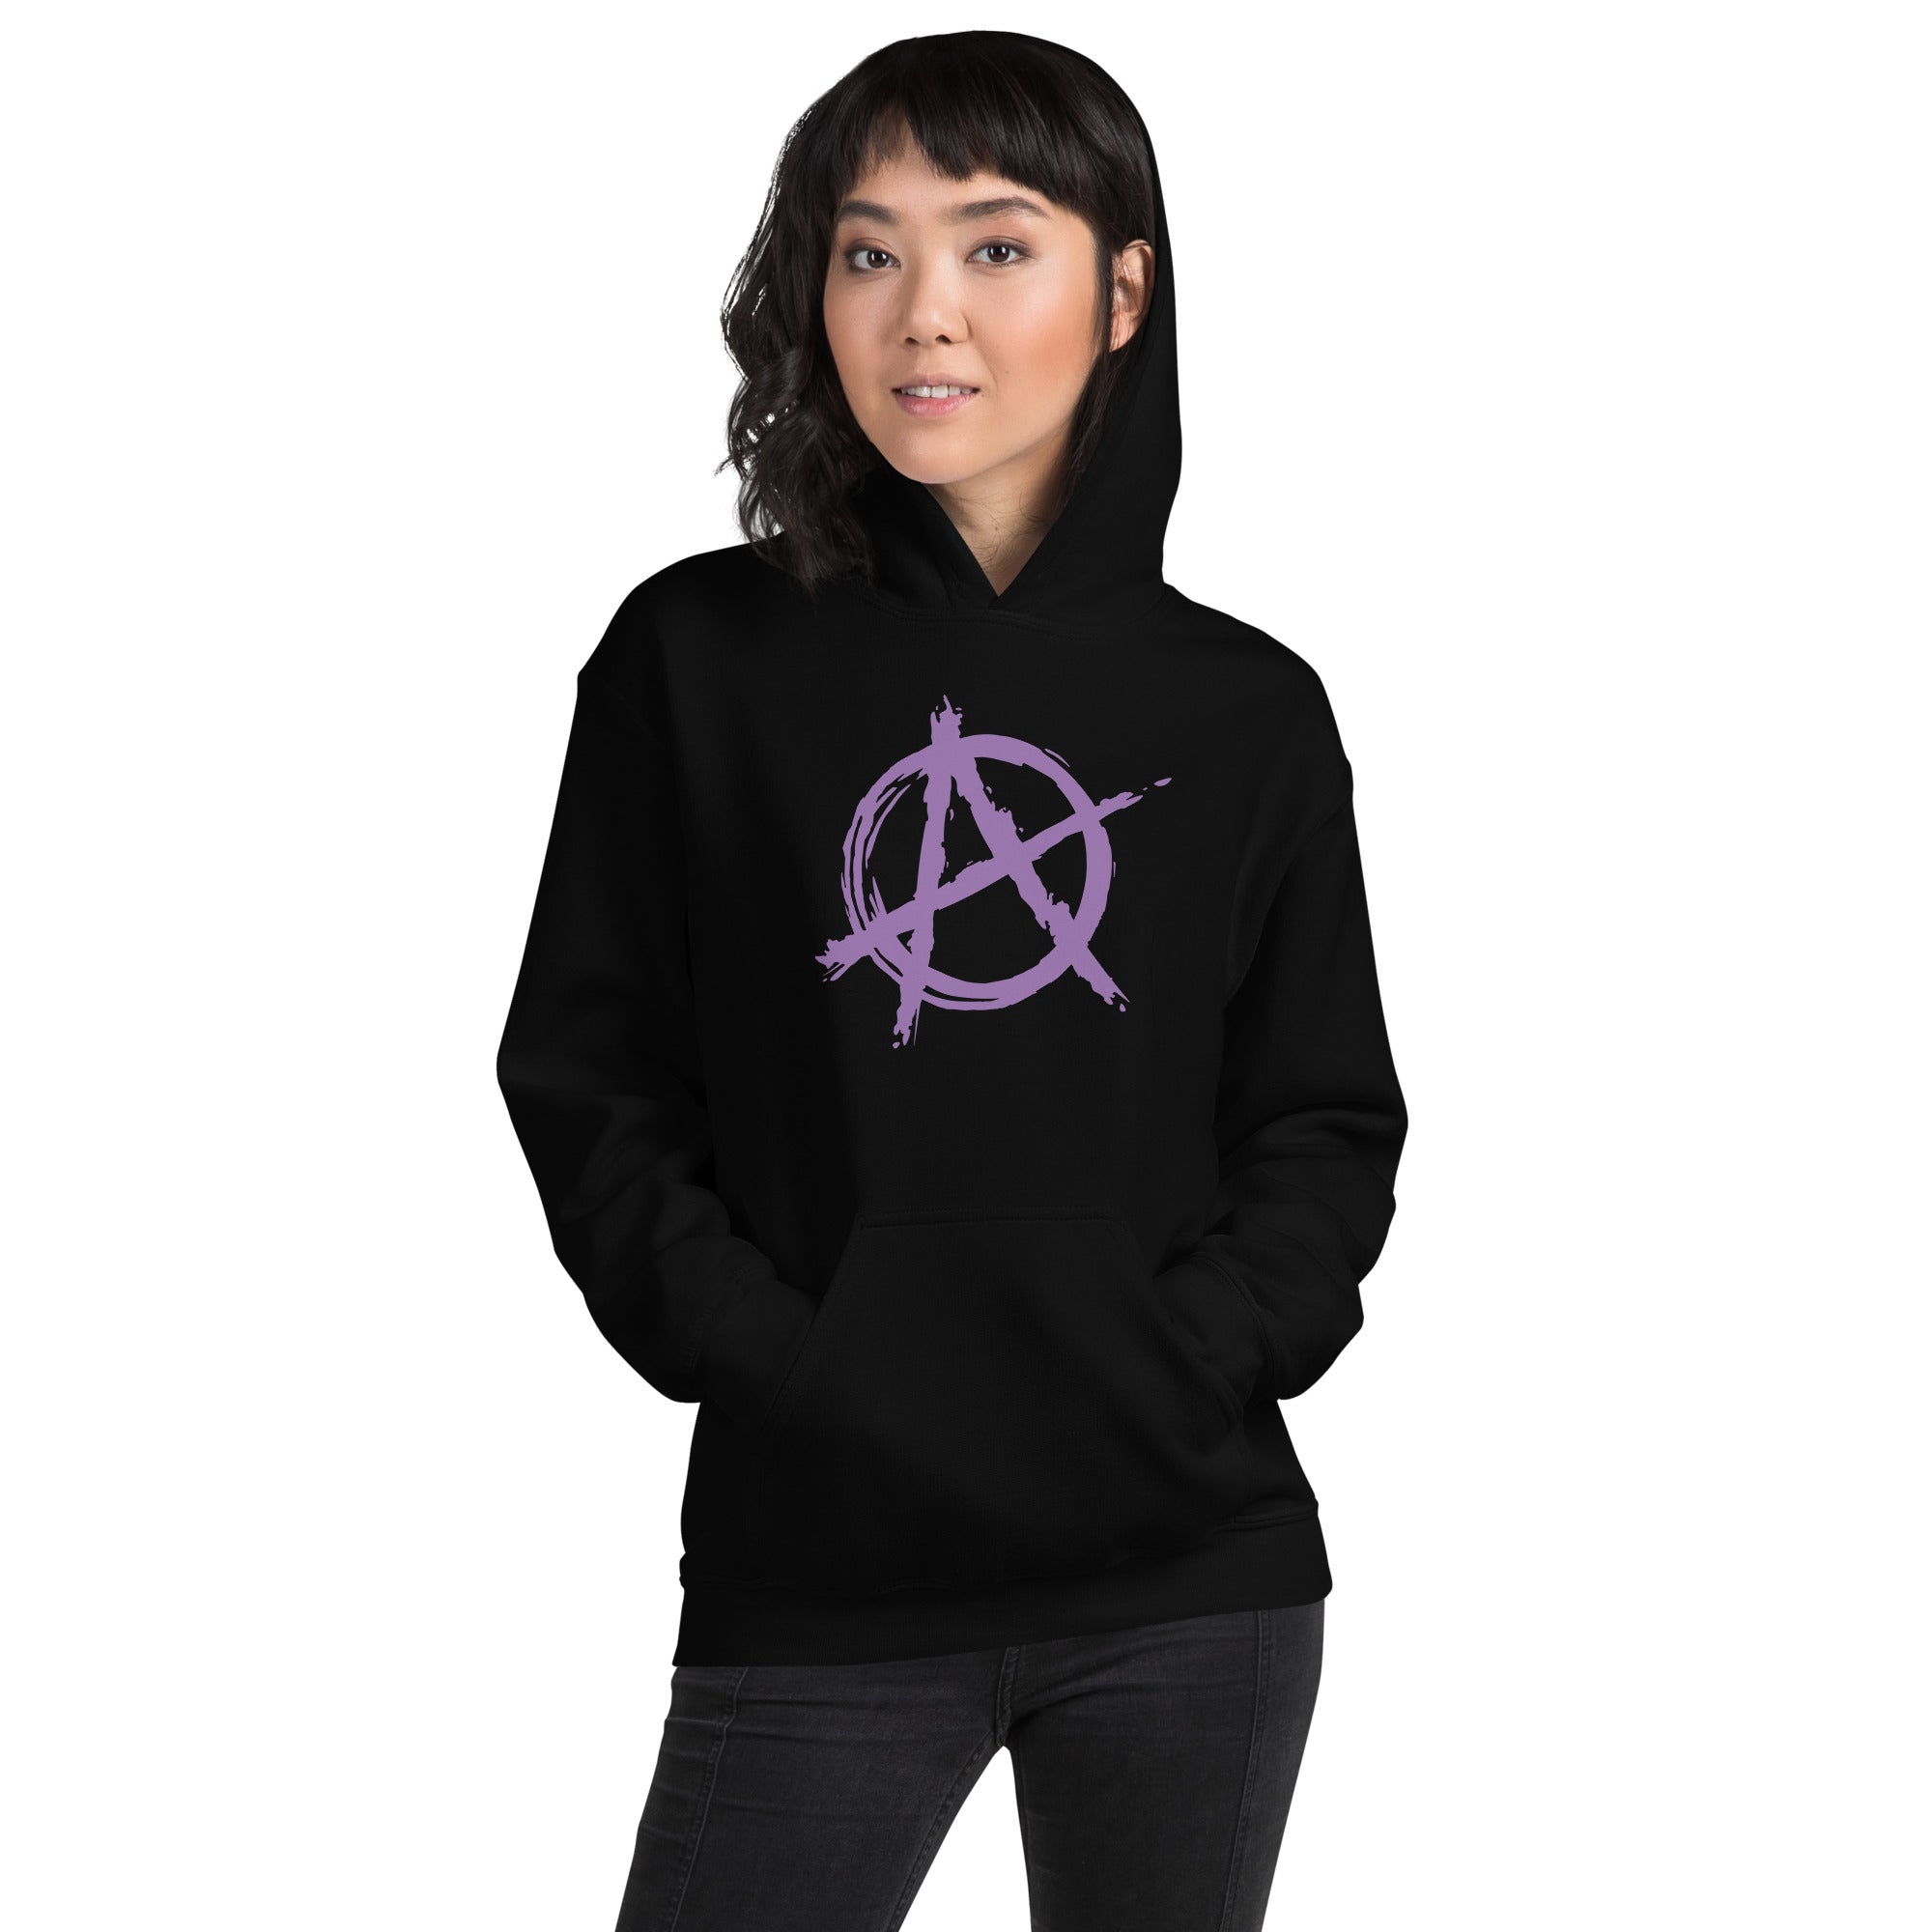 Purple Anarchy is Order Symbol Punk Rock Unisex Hoodie Sweatshirt - Edge of Life Designs